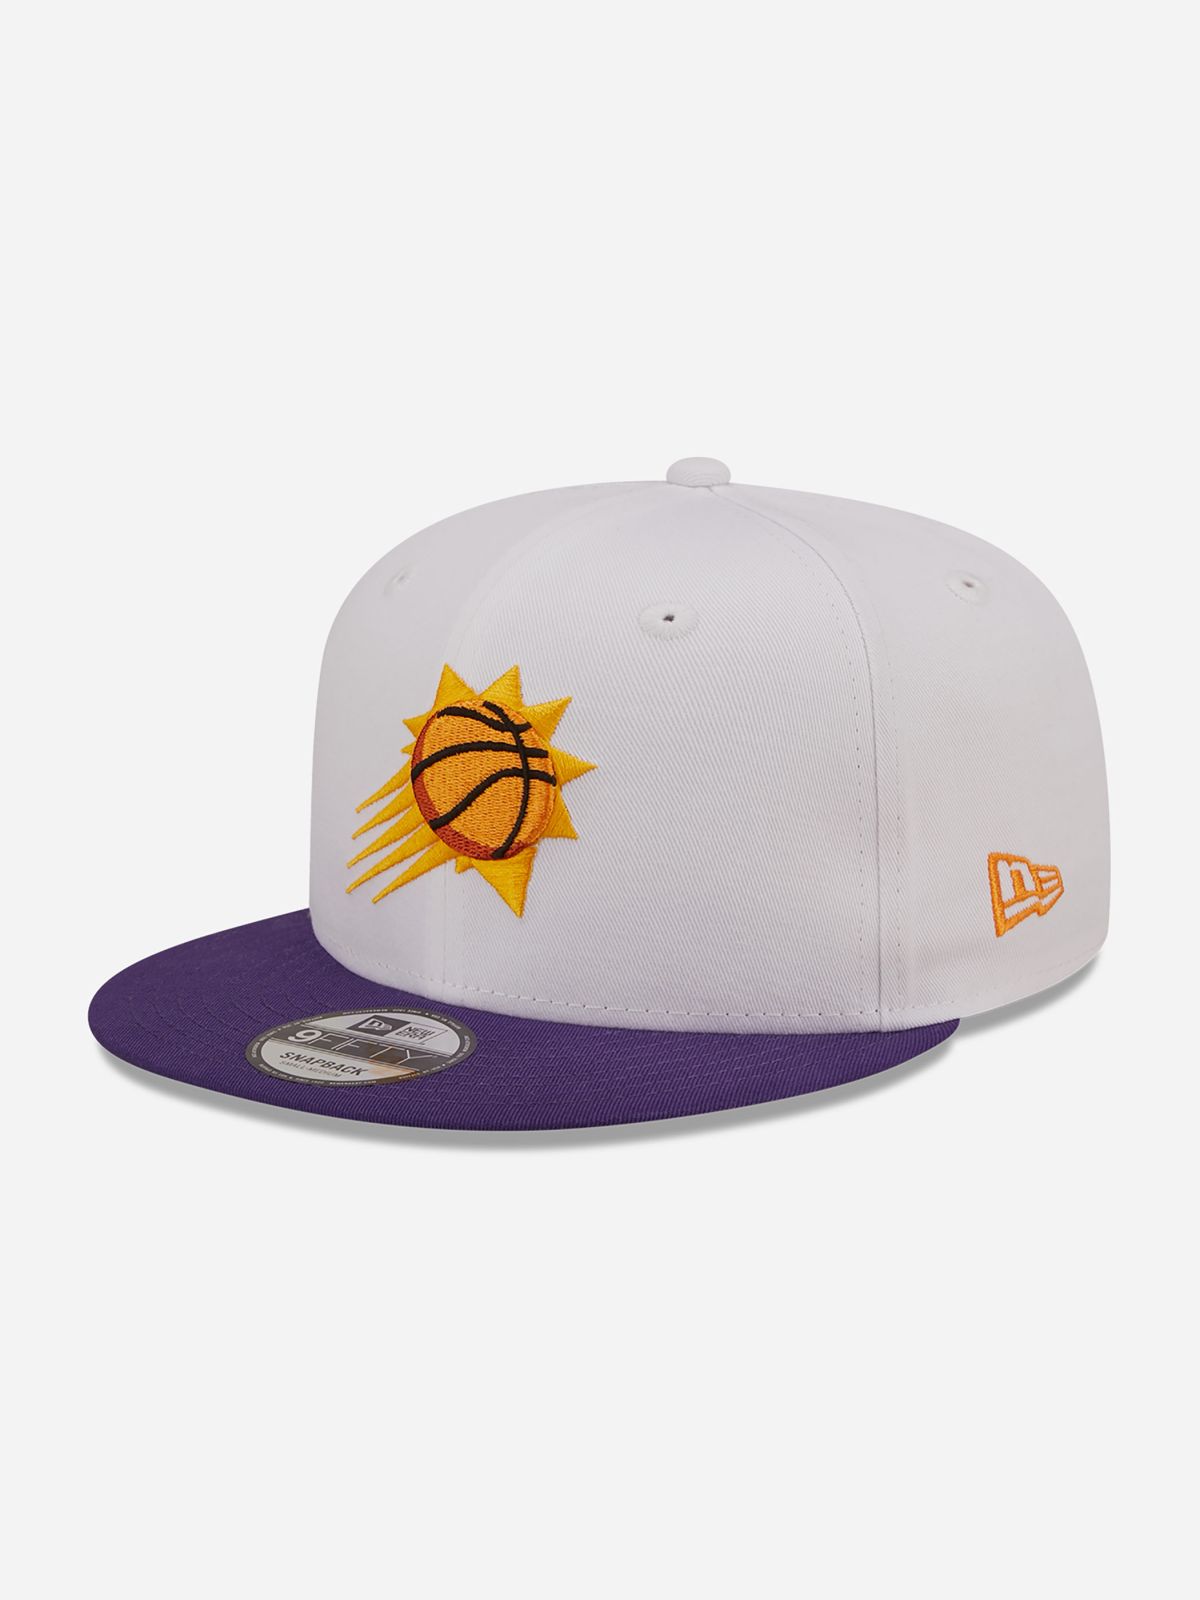  כובע מצחייה לוגו NBA / גברים של NEW ERA